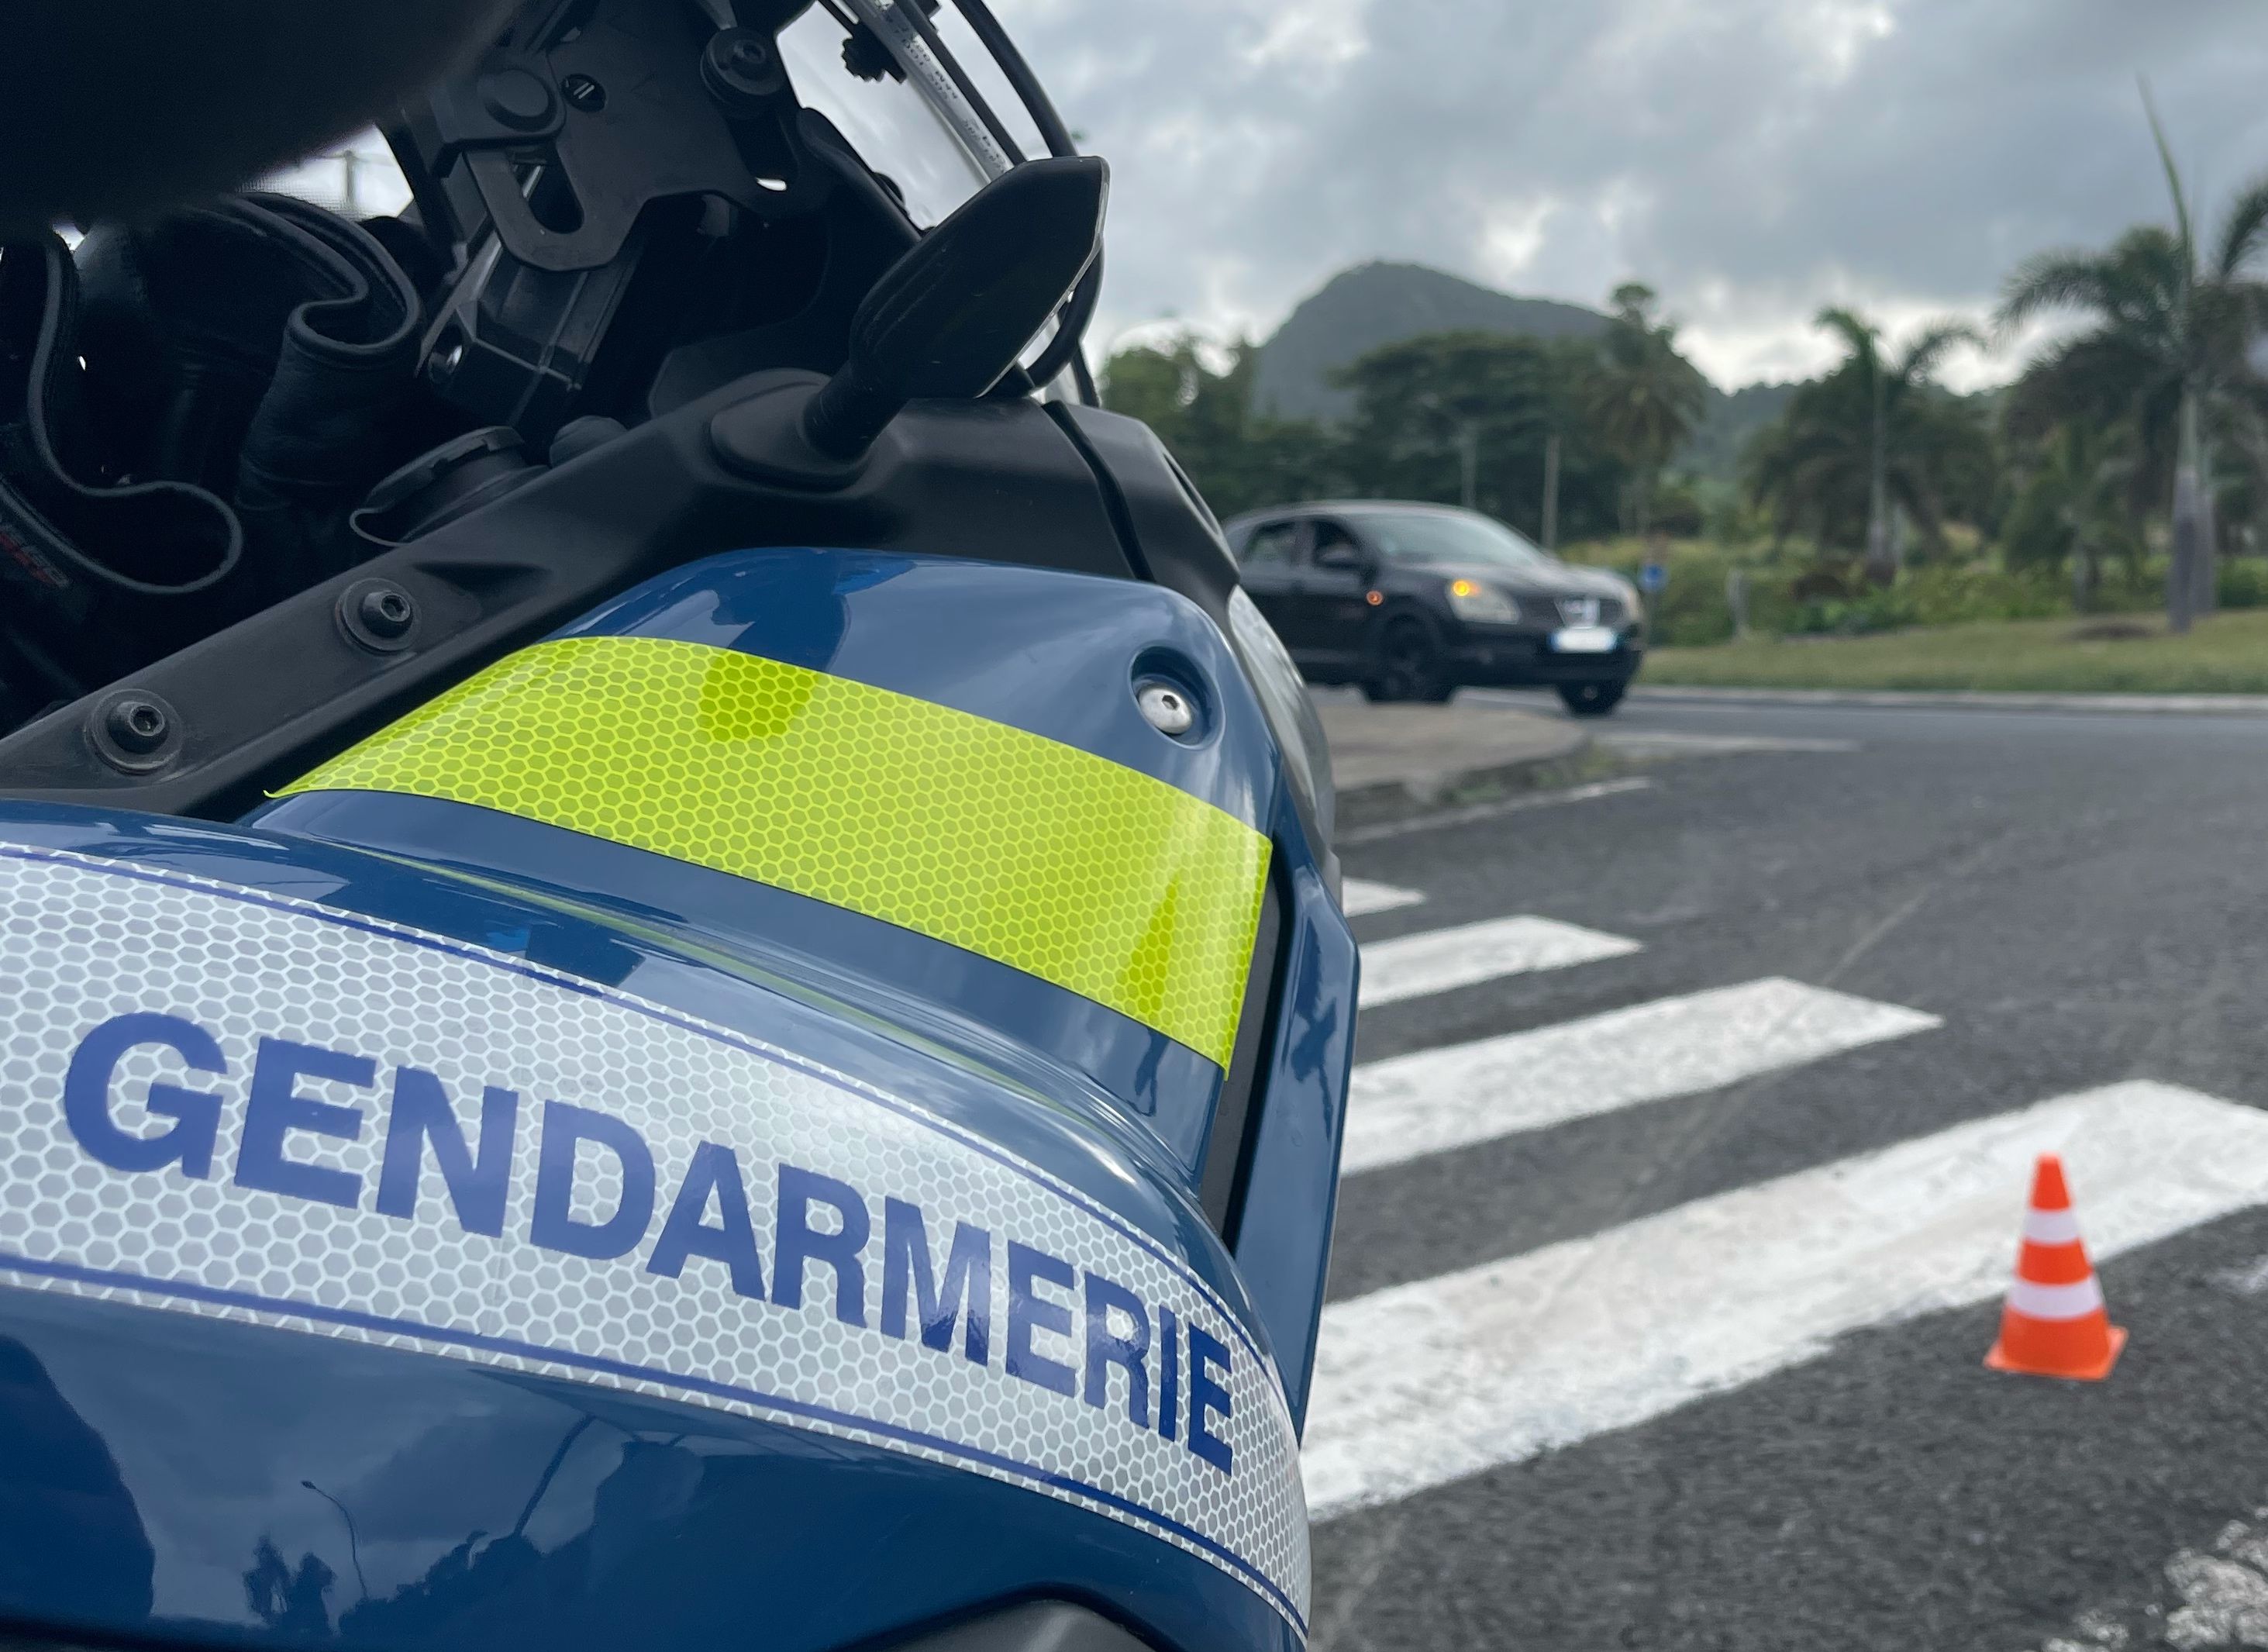     La Guadeloupe et la Martinique en tête des chiffres des refus d'obtempérer routiers 

